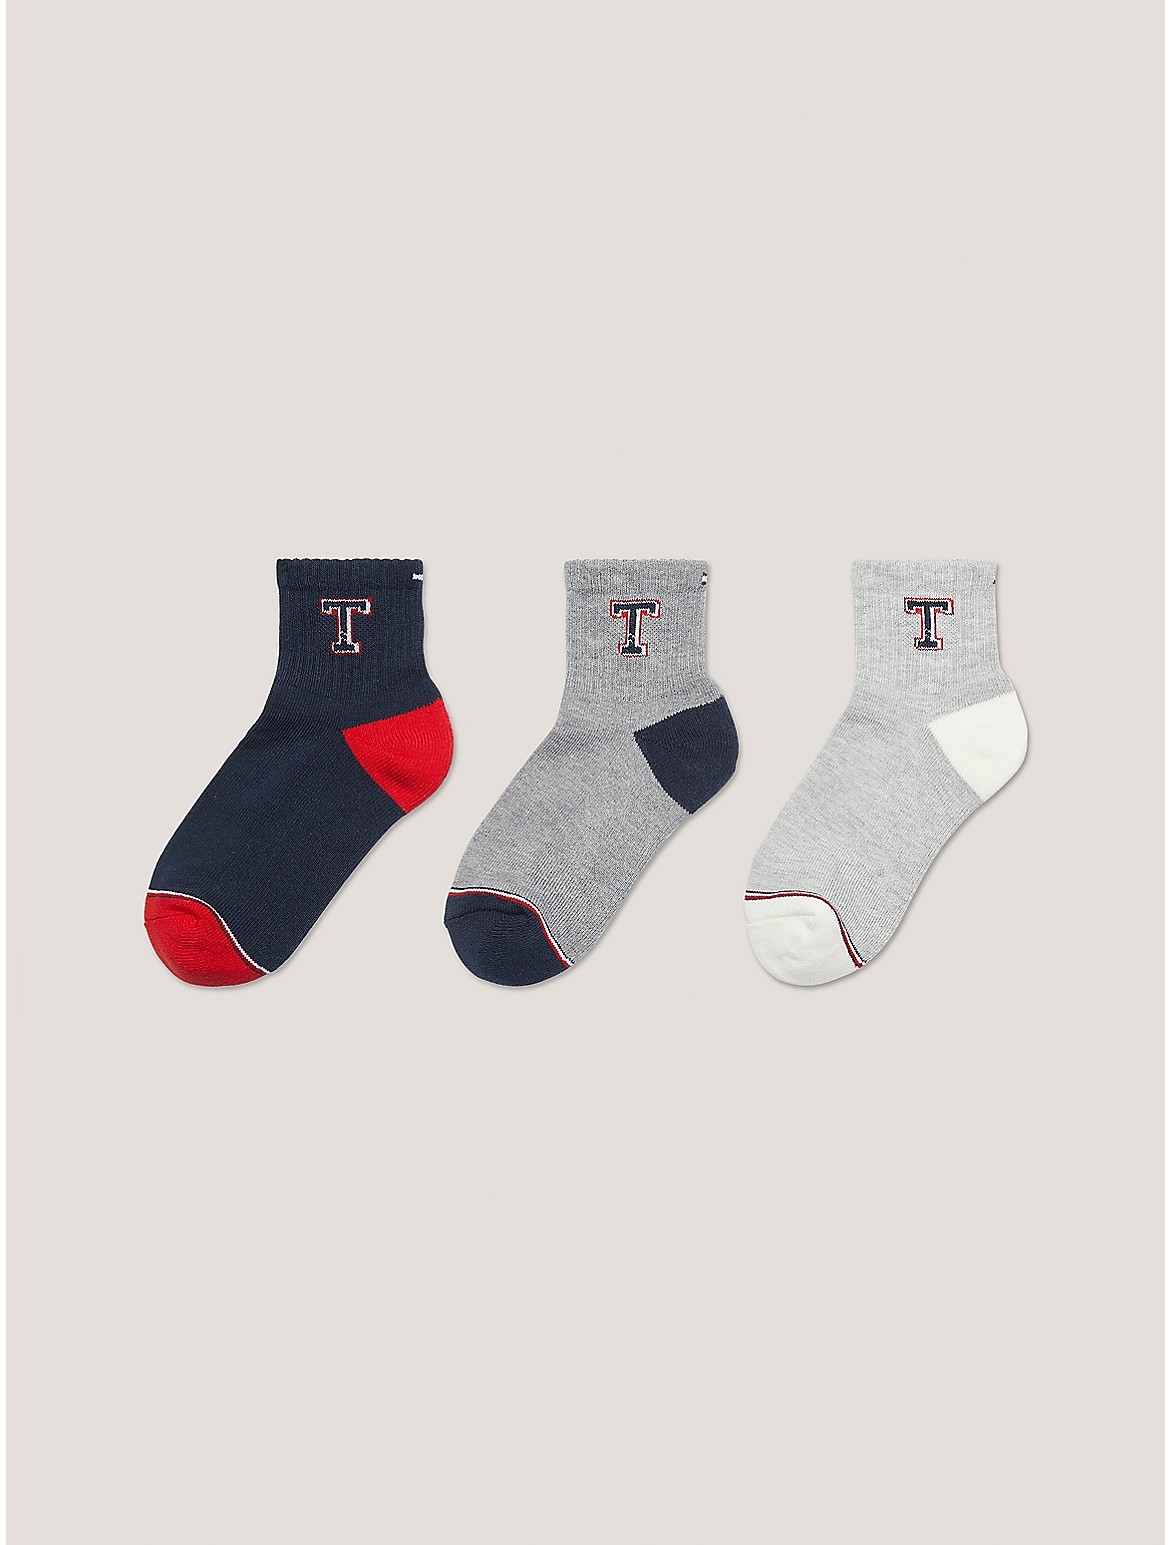 Tommy Hilfiger Boys' Kids' Quarter Top Sock 6-Pack - Grey - S